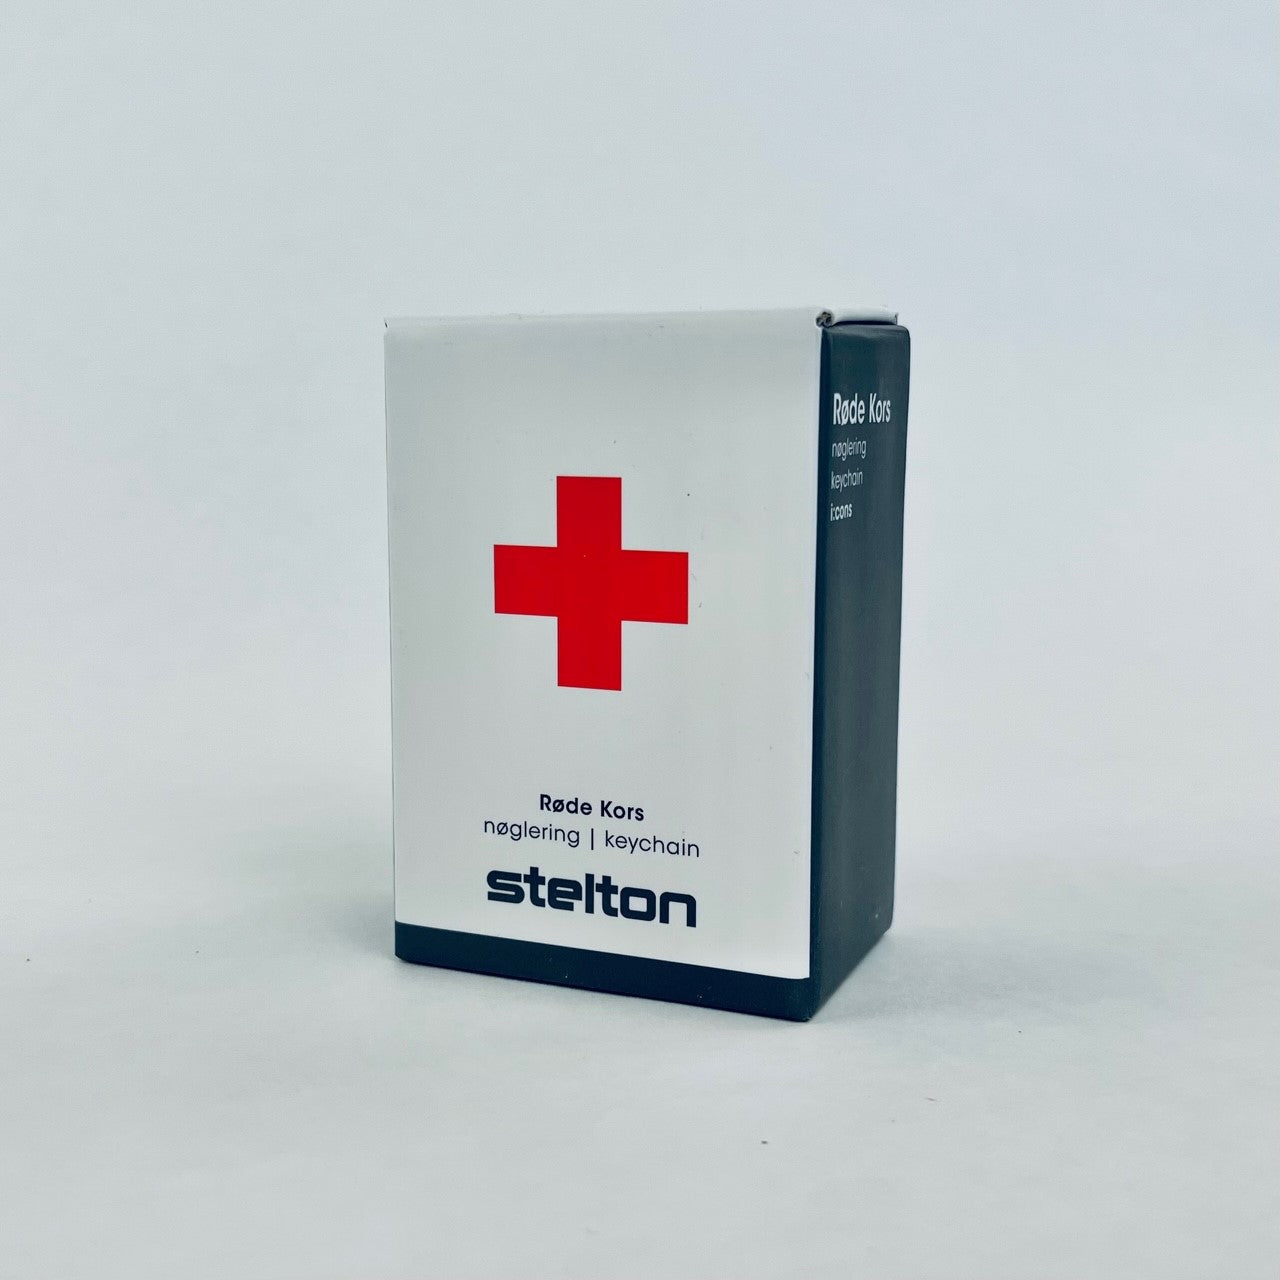 Røde Kors nøglering fra Stelton